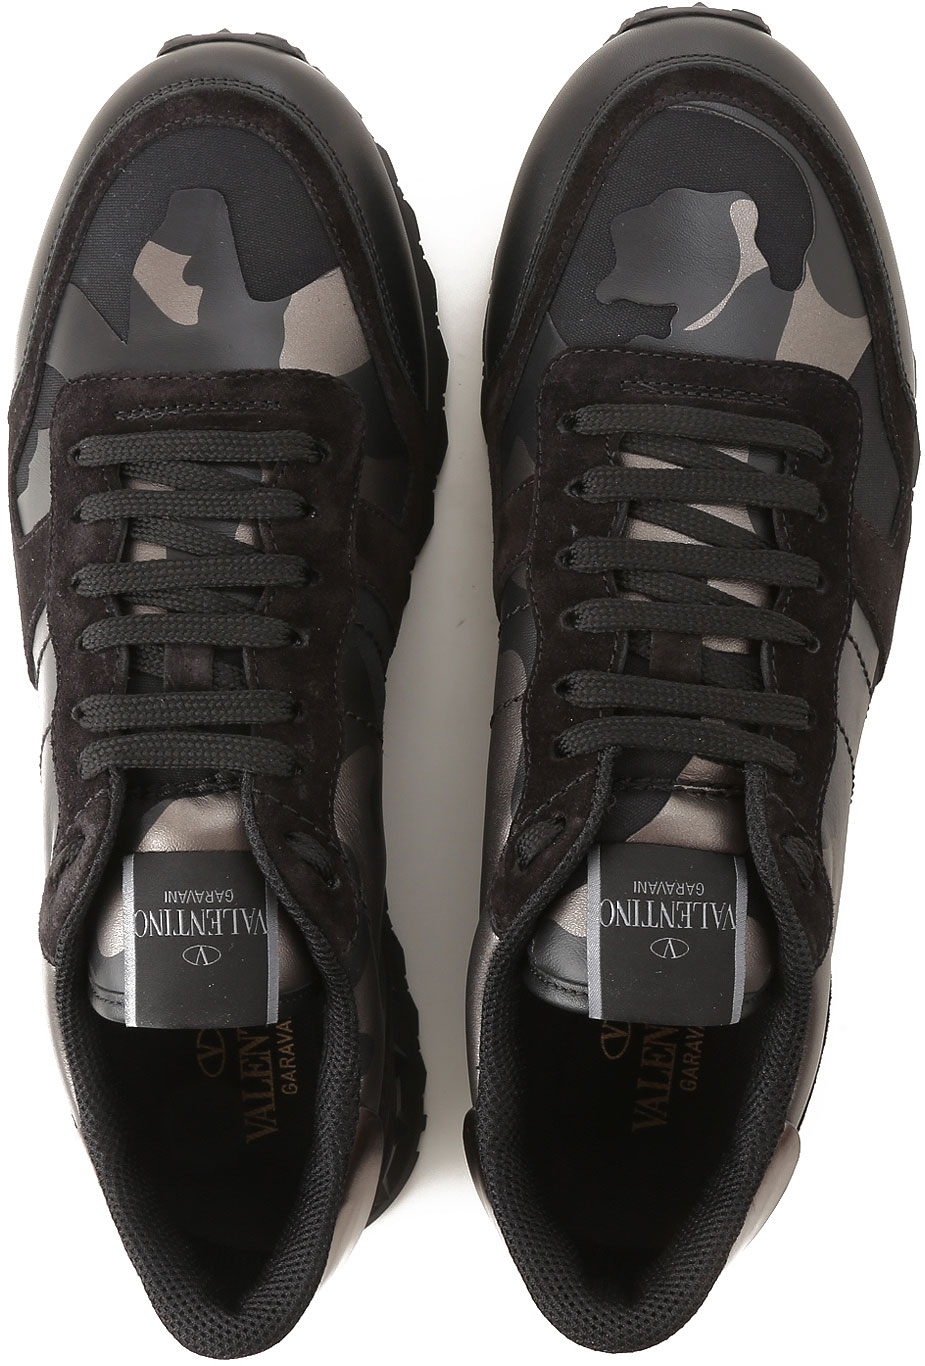 Mens Shoes Valentino Garavani, Style code: qy0s0723-nta-e43